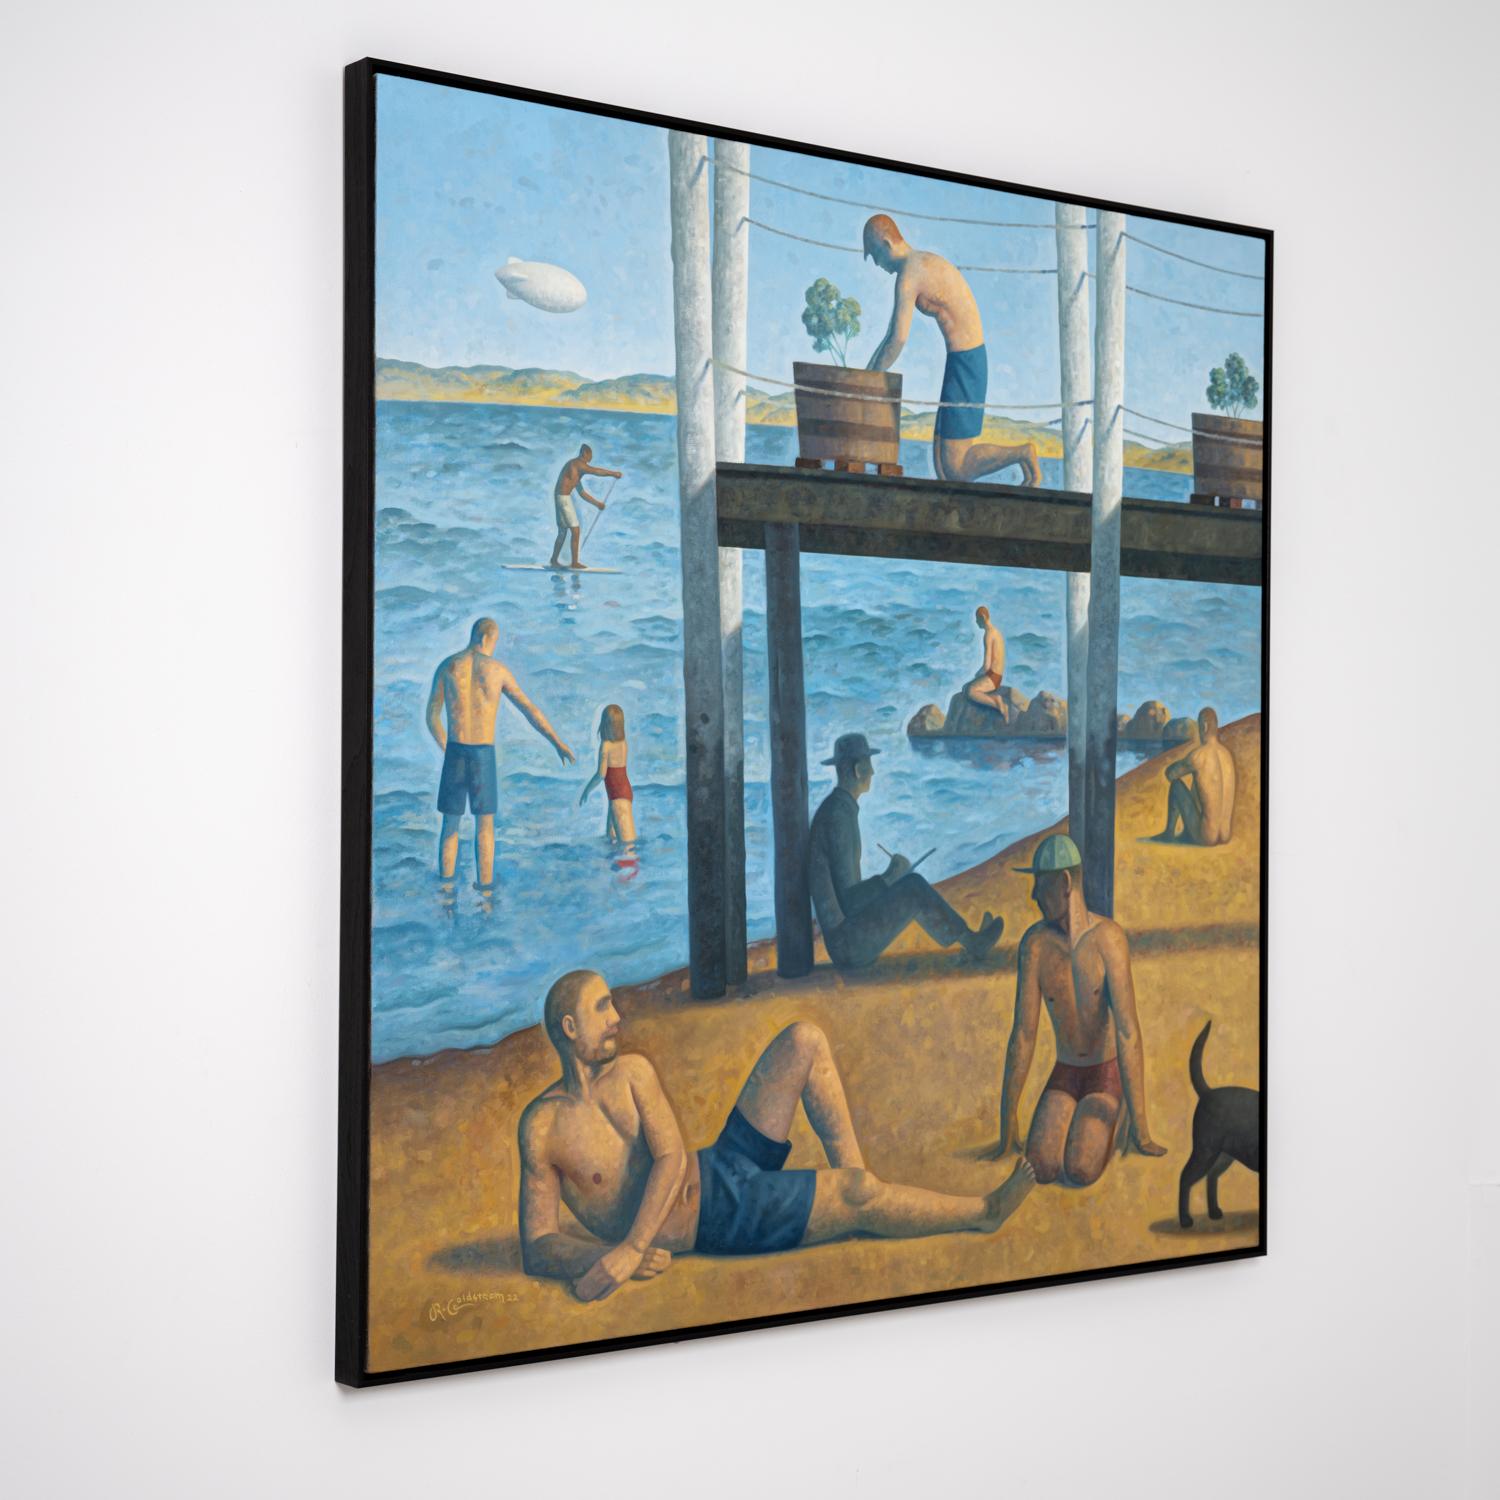 Provincetown Bay (peinture de paysage inspirée de la baie de Séurat représentant des personnages sur une plage) - Gris Landscape Painting par Robert Goldstrom